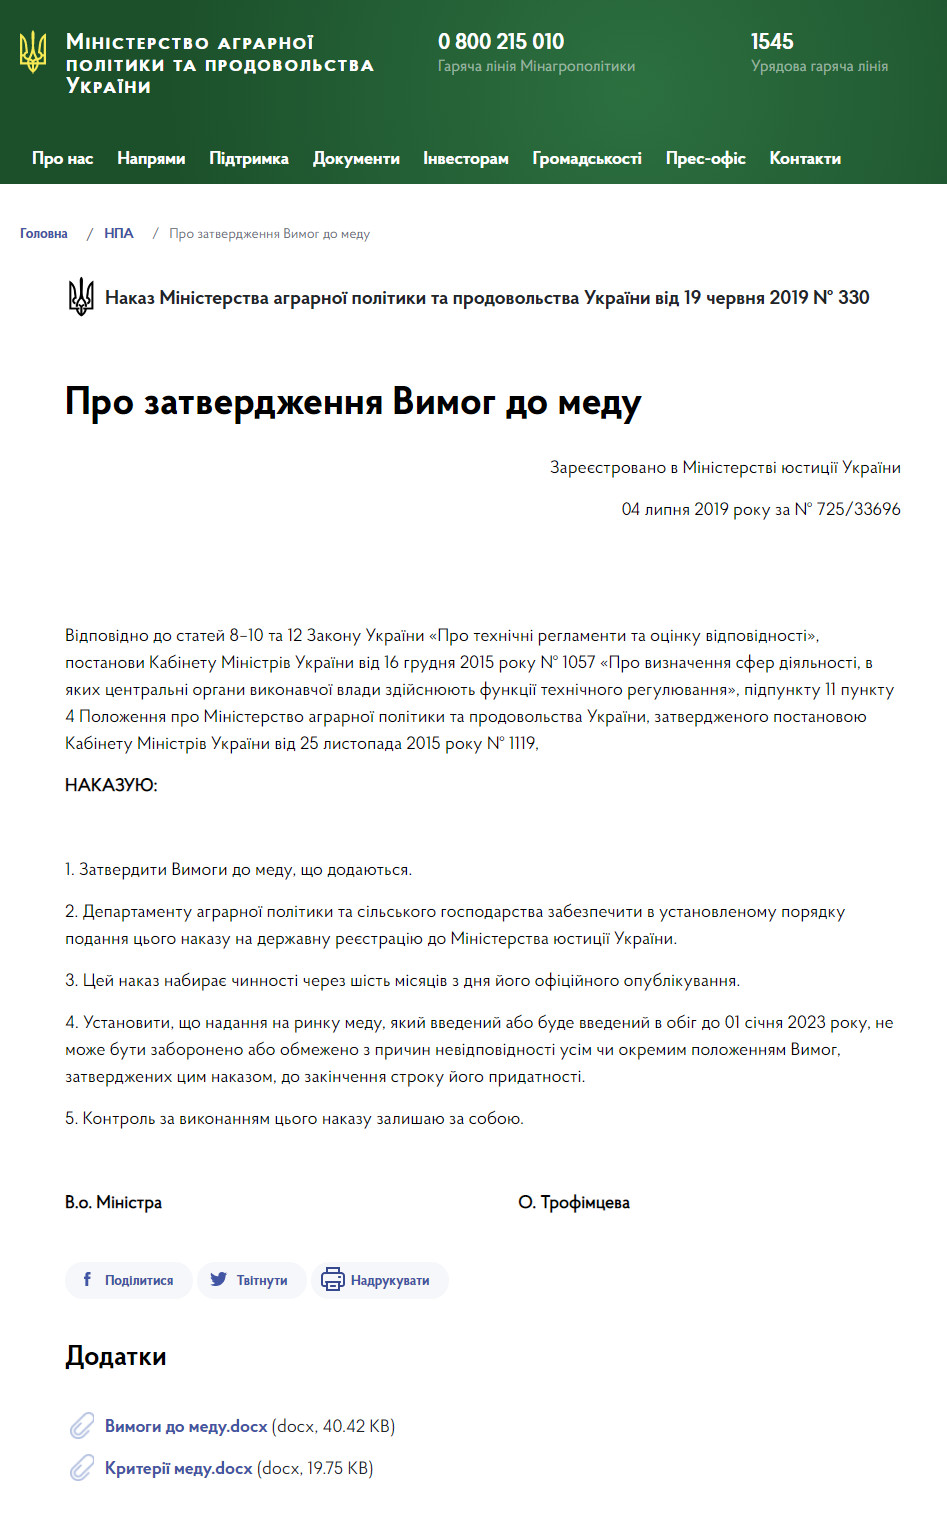 https://minagro.gov.ua/ua/npa/pro-zatverdzhennya-vimog-do-medu-2